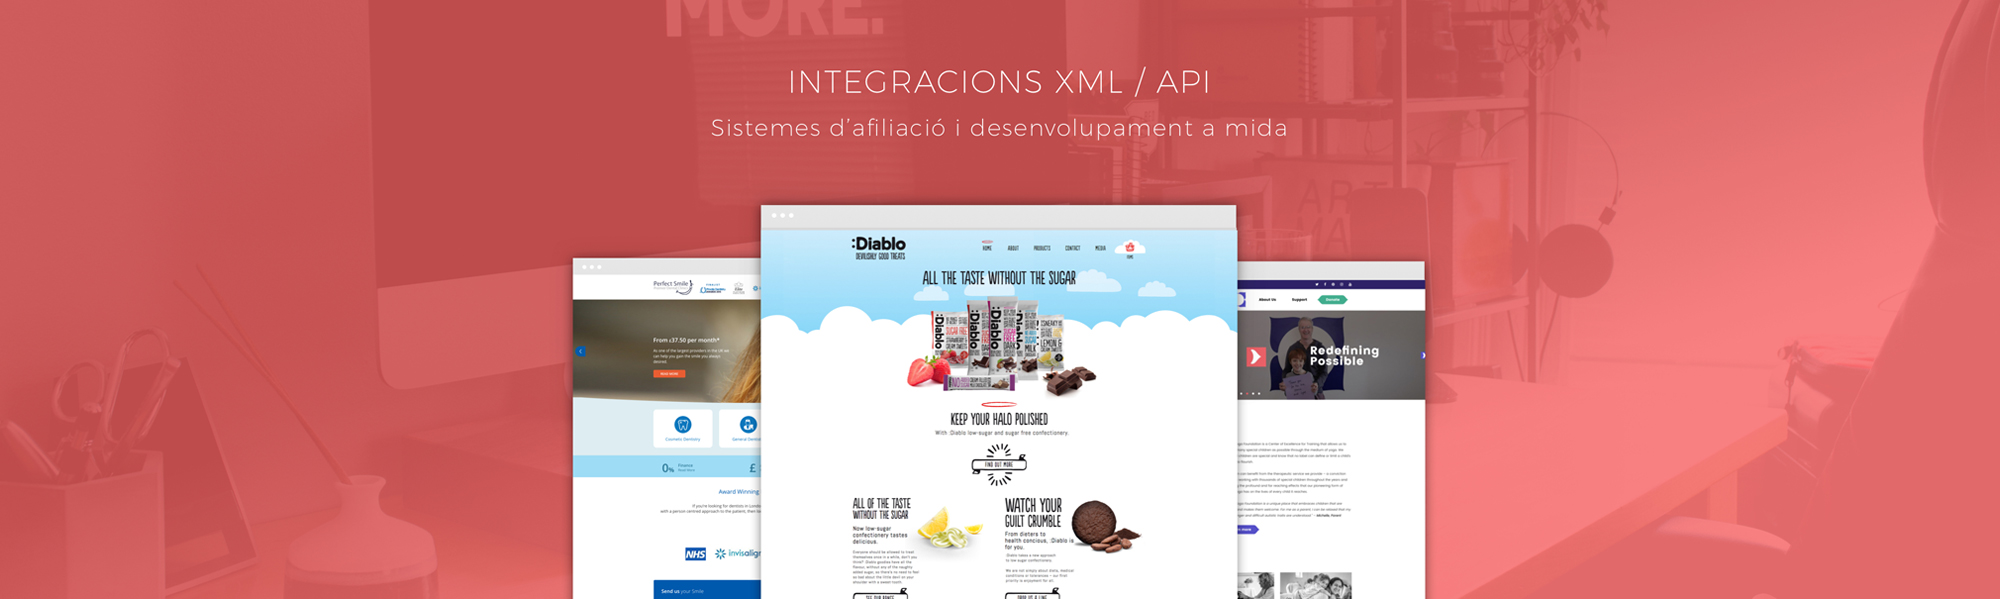 Vsourz | Integracions XML i API